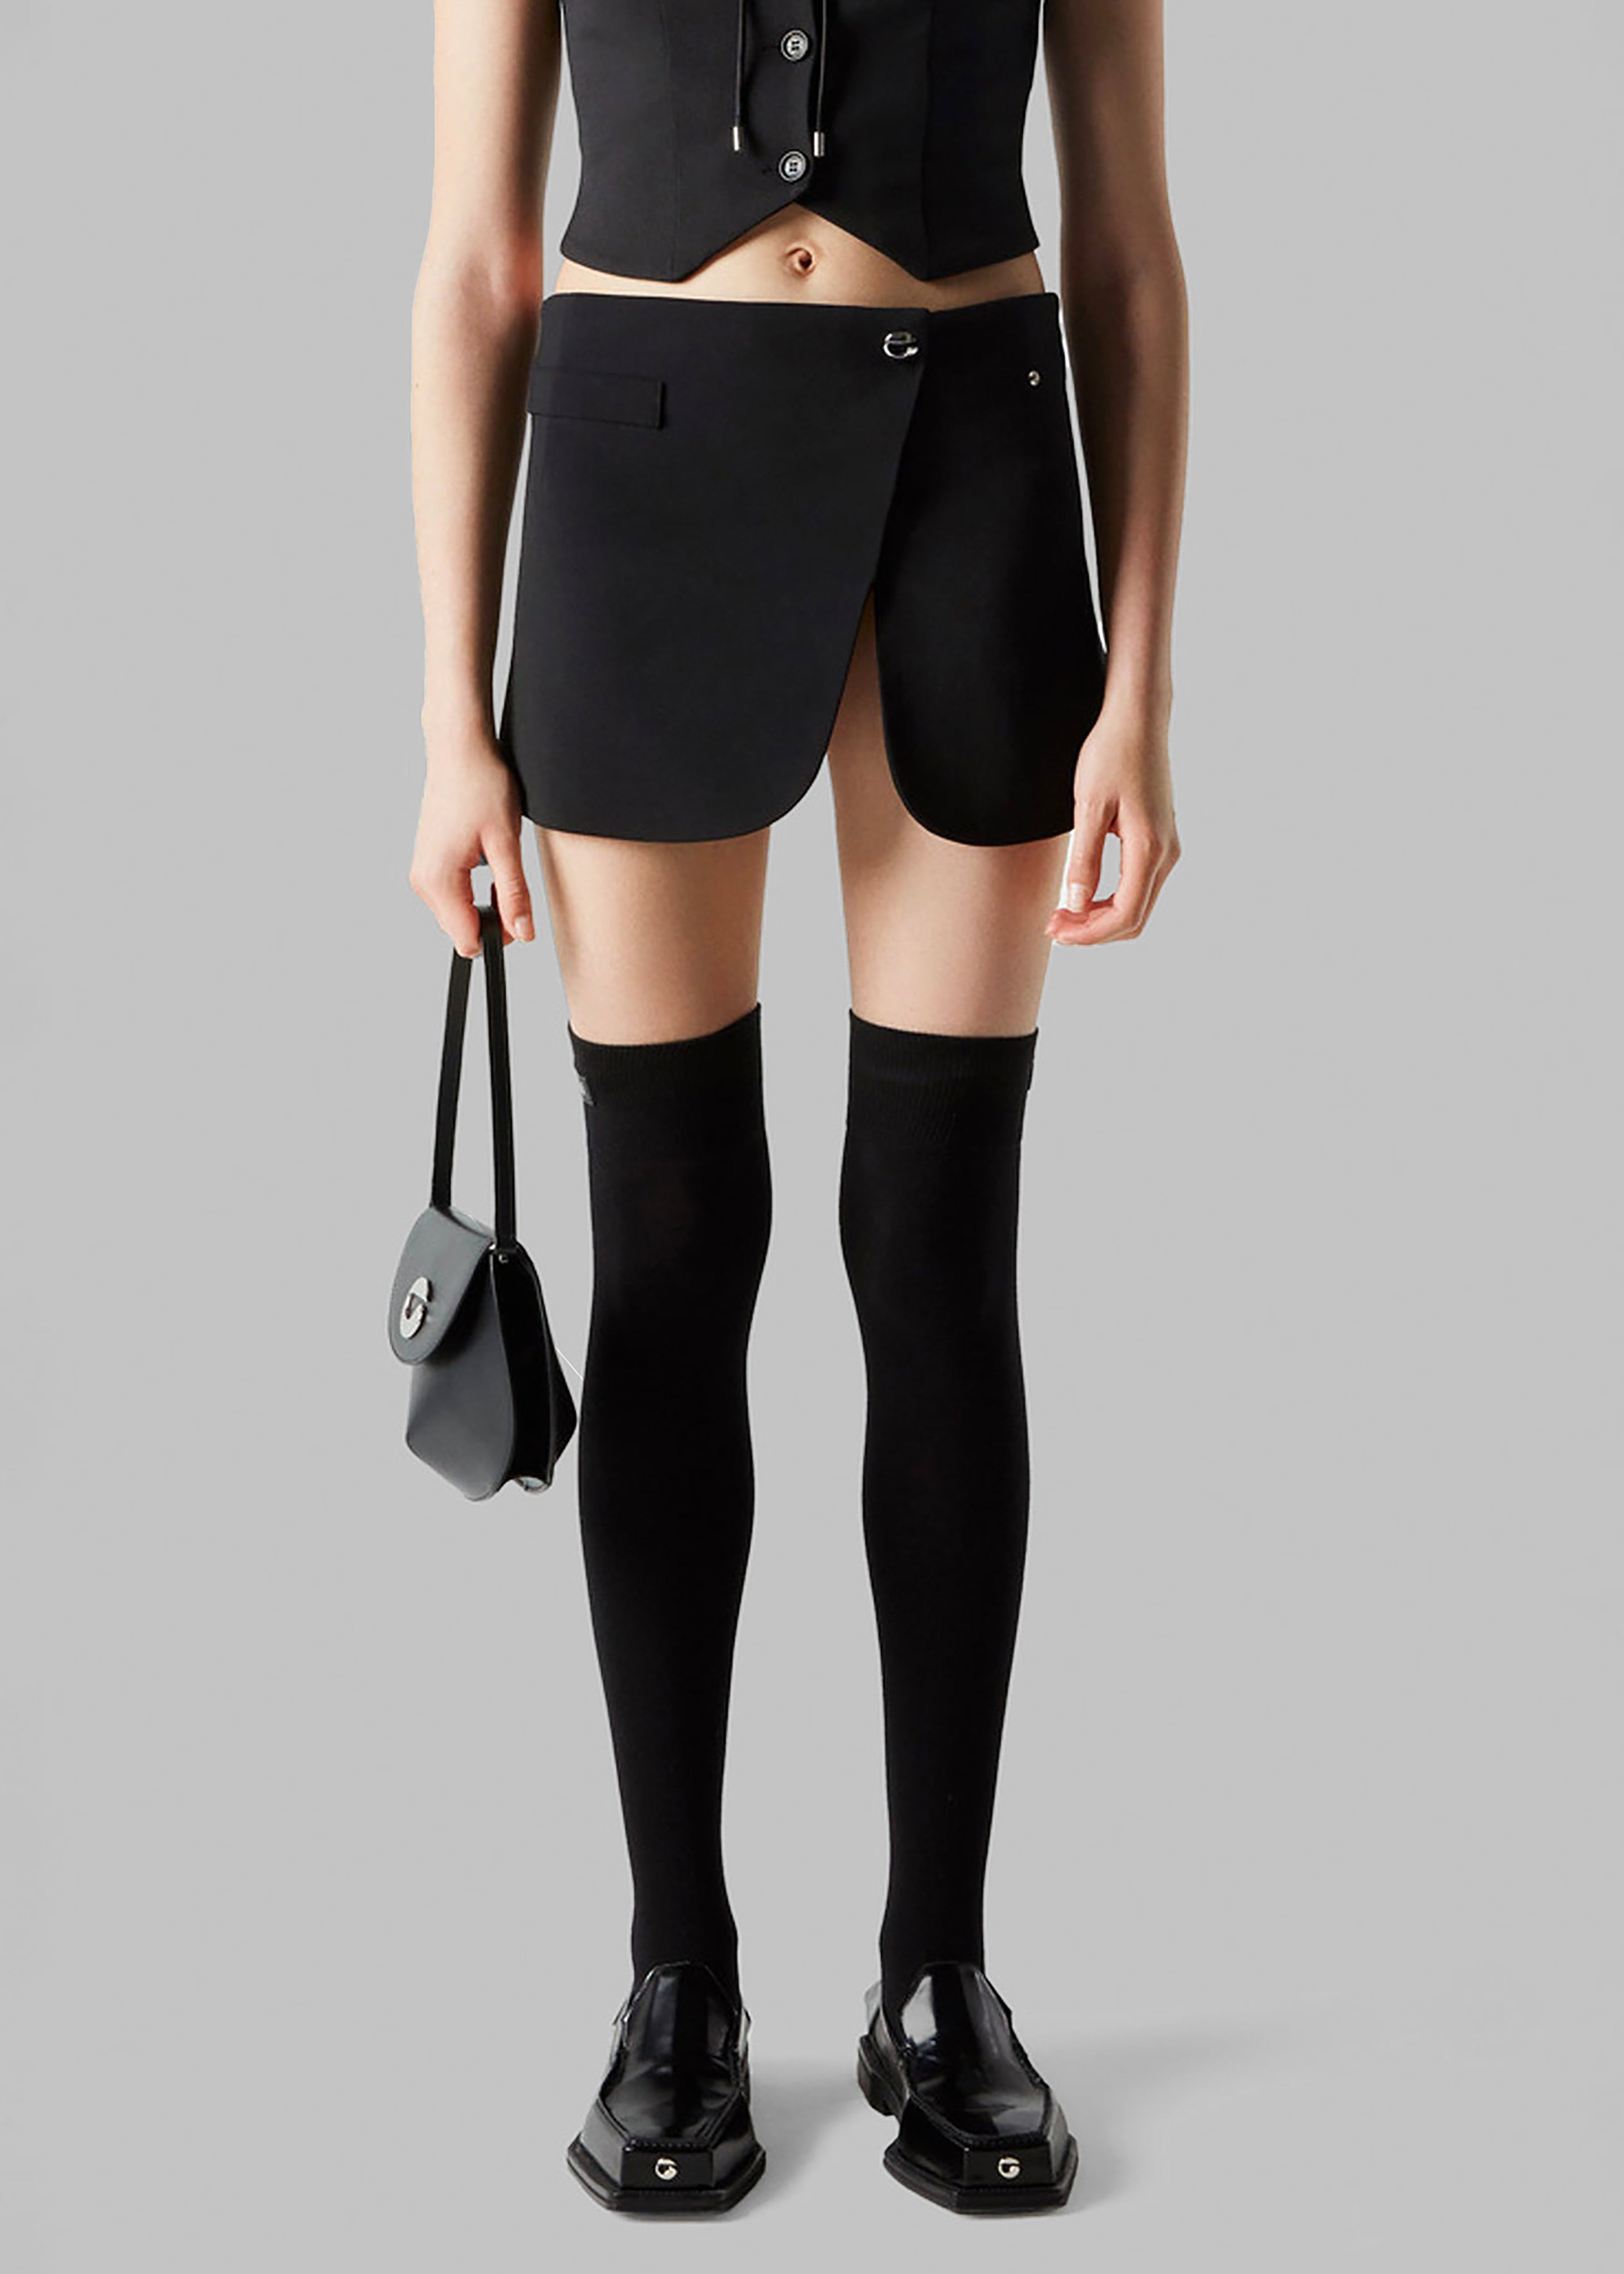 Coperni Tailored Mini Skirt - Black - 13